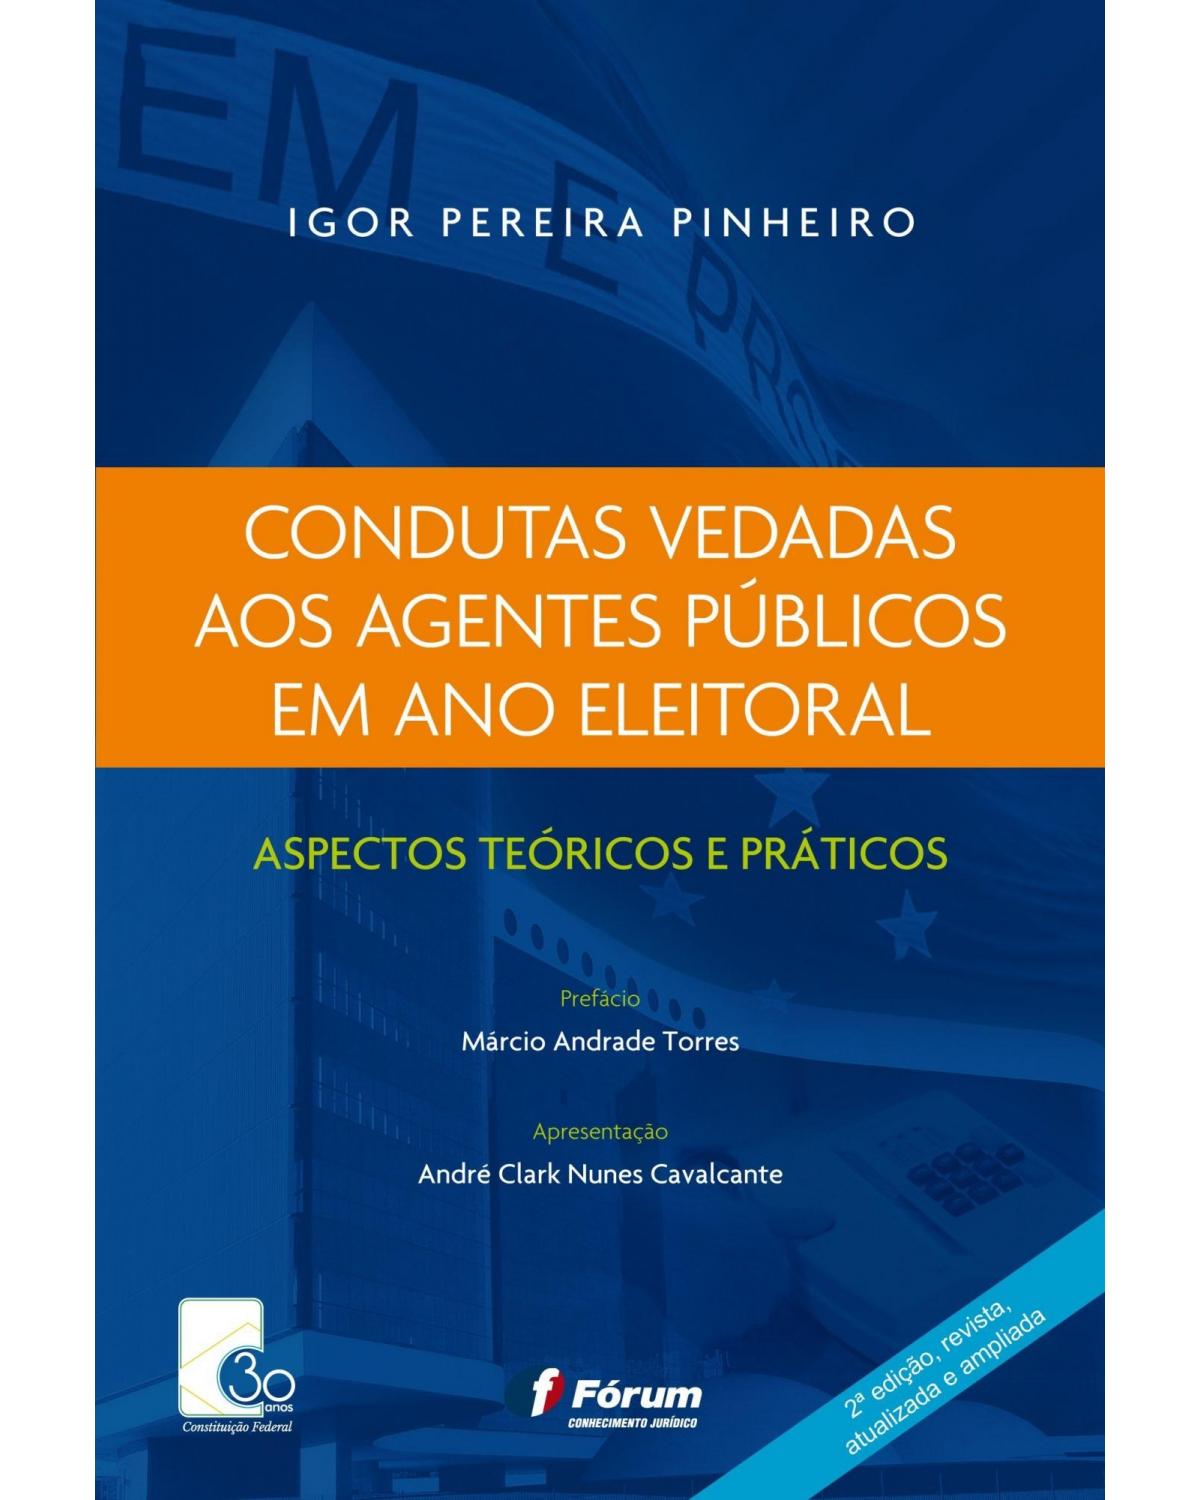 Condutas vedadas aos agentes públicos em ano eleitoral: Aspectos teóricos e práticos - 2ª Edição